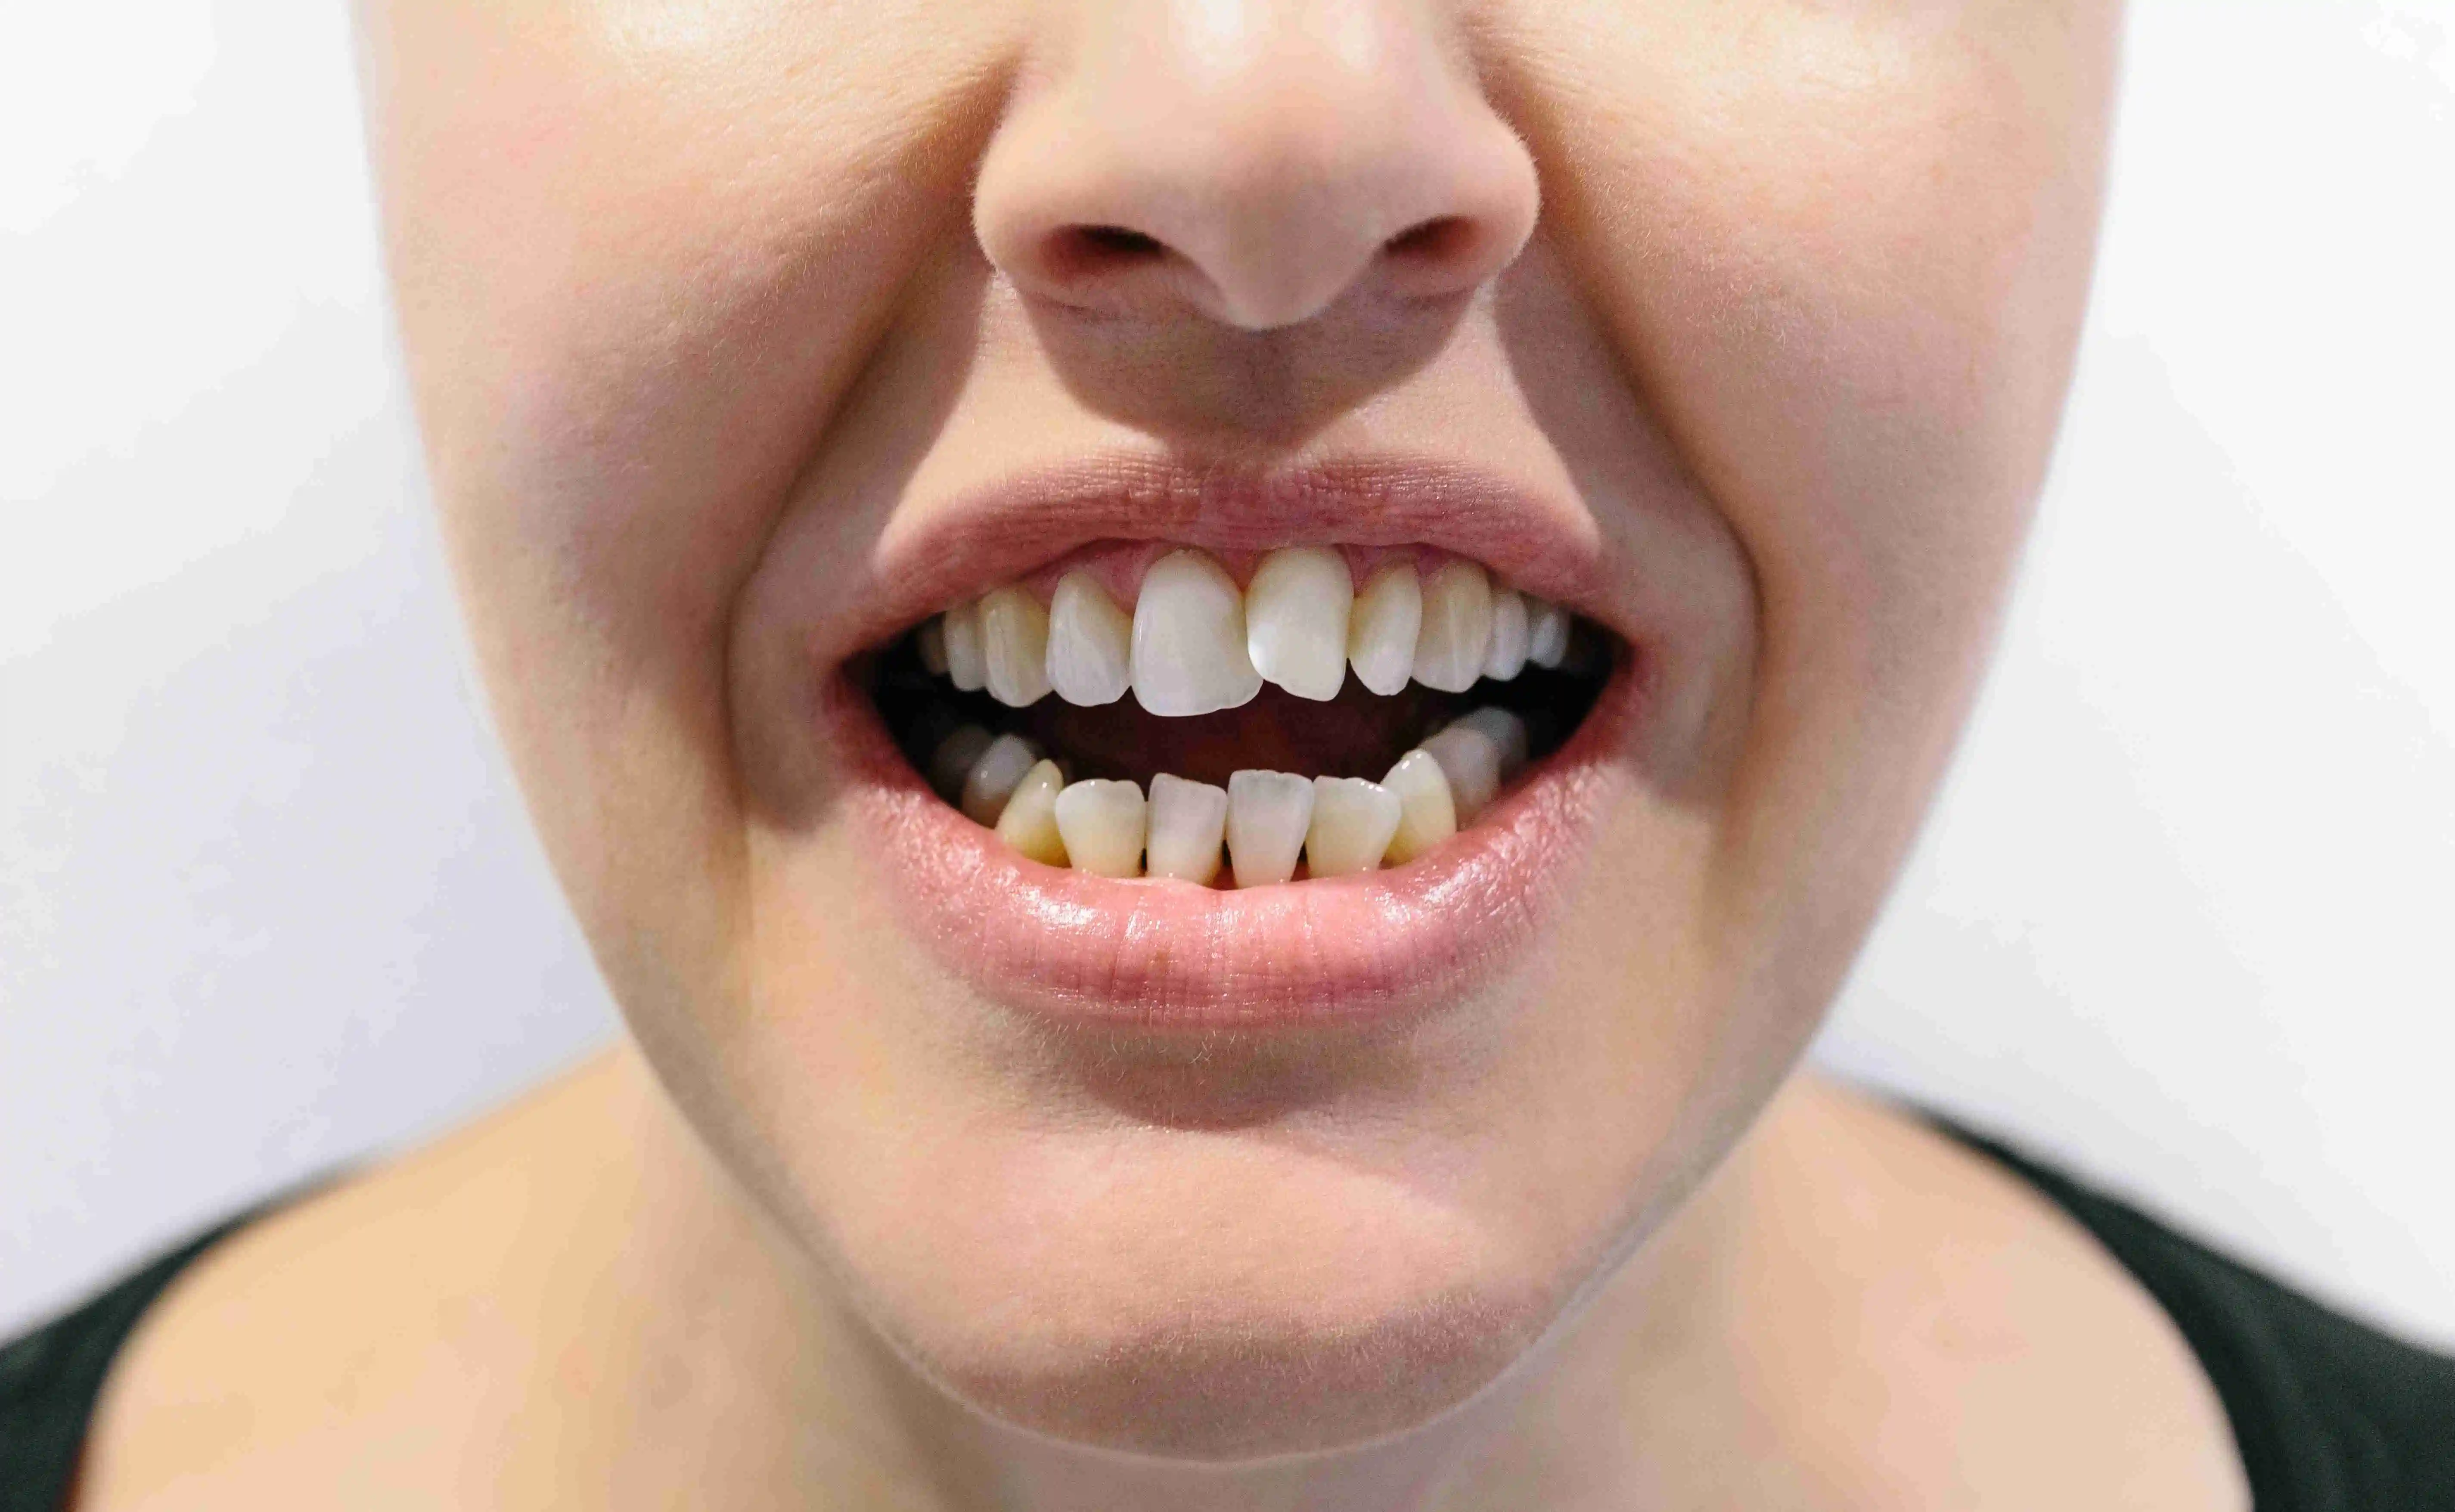 Cosmetic Dental Bonding on Teeth